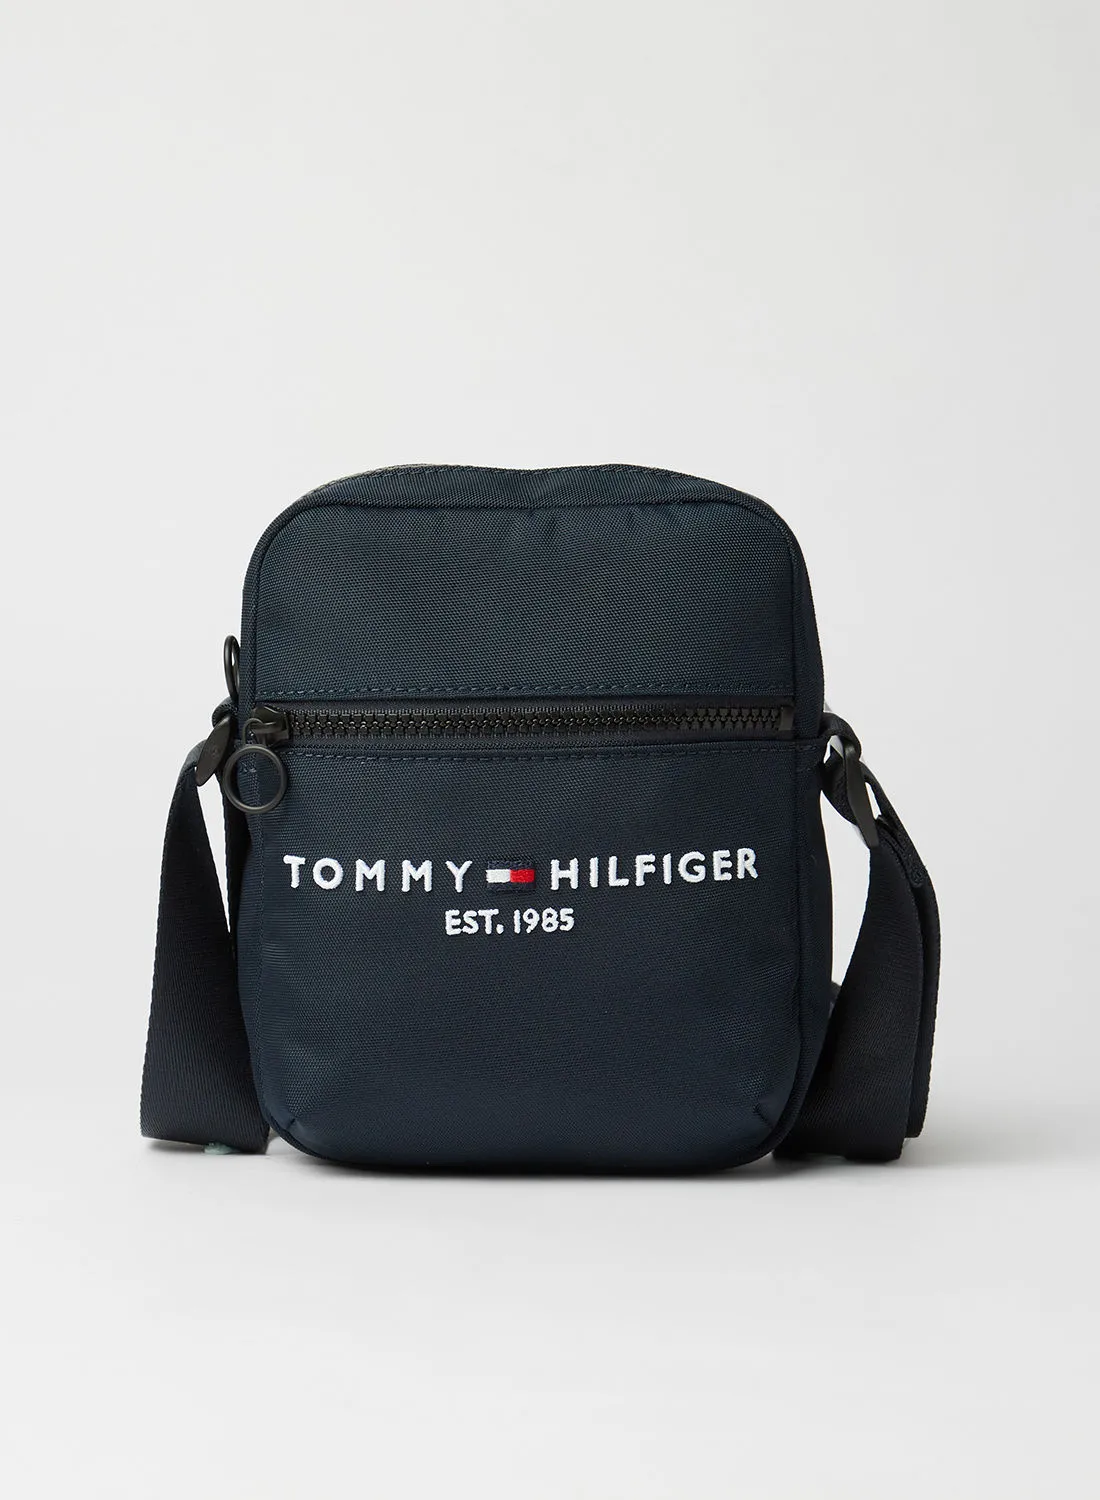 تومي هيلفيغر حقيبة مراسل صغيرة زرقاء اللون